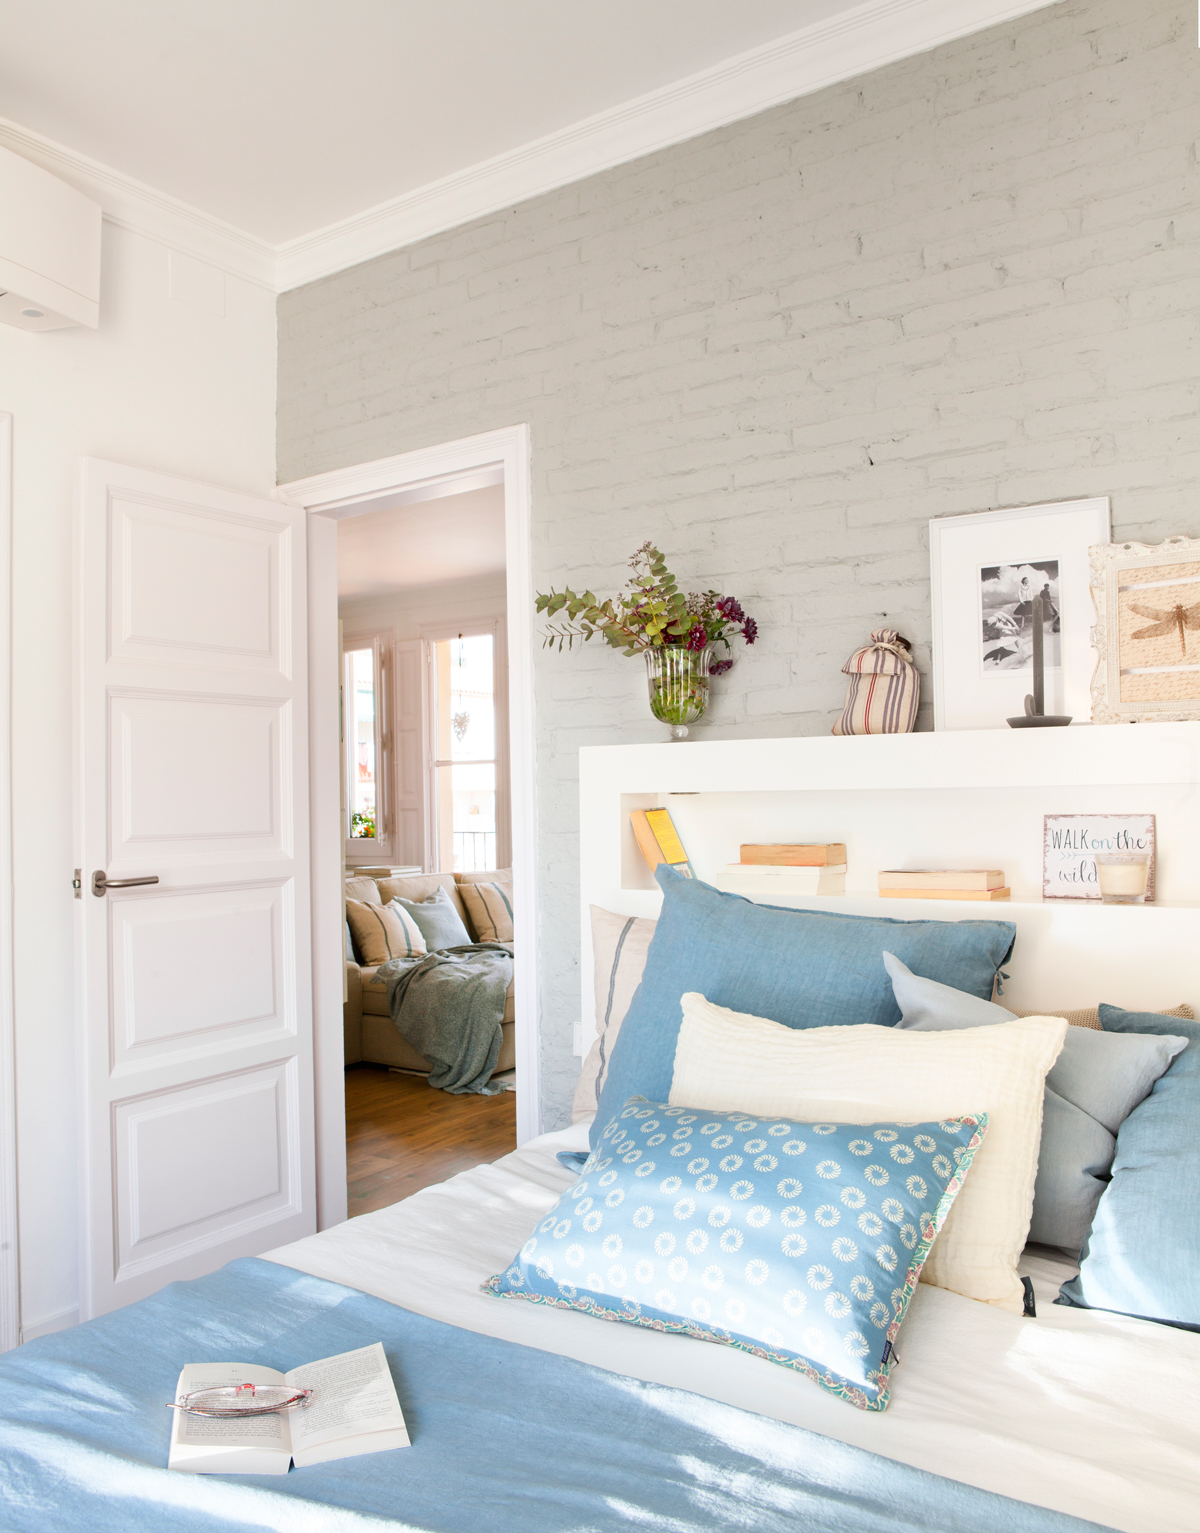 00429037. Dormitorio con pared de ladrillo en gris, ropa de cama en azul y blanco y cabecero con hueco de madera blanca 00429037